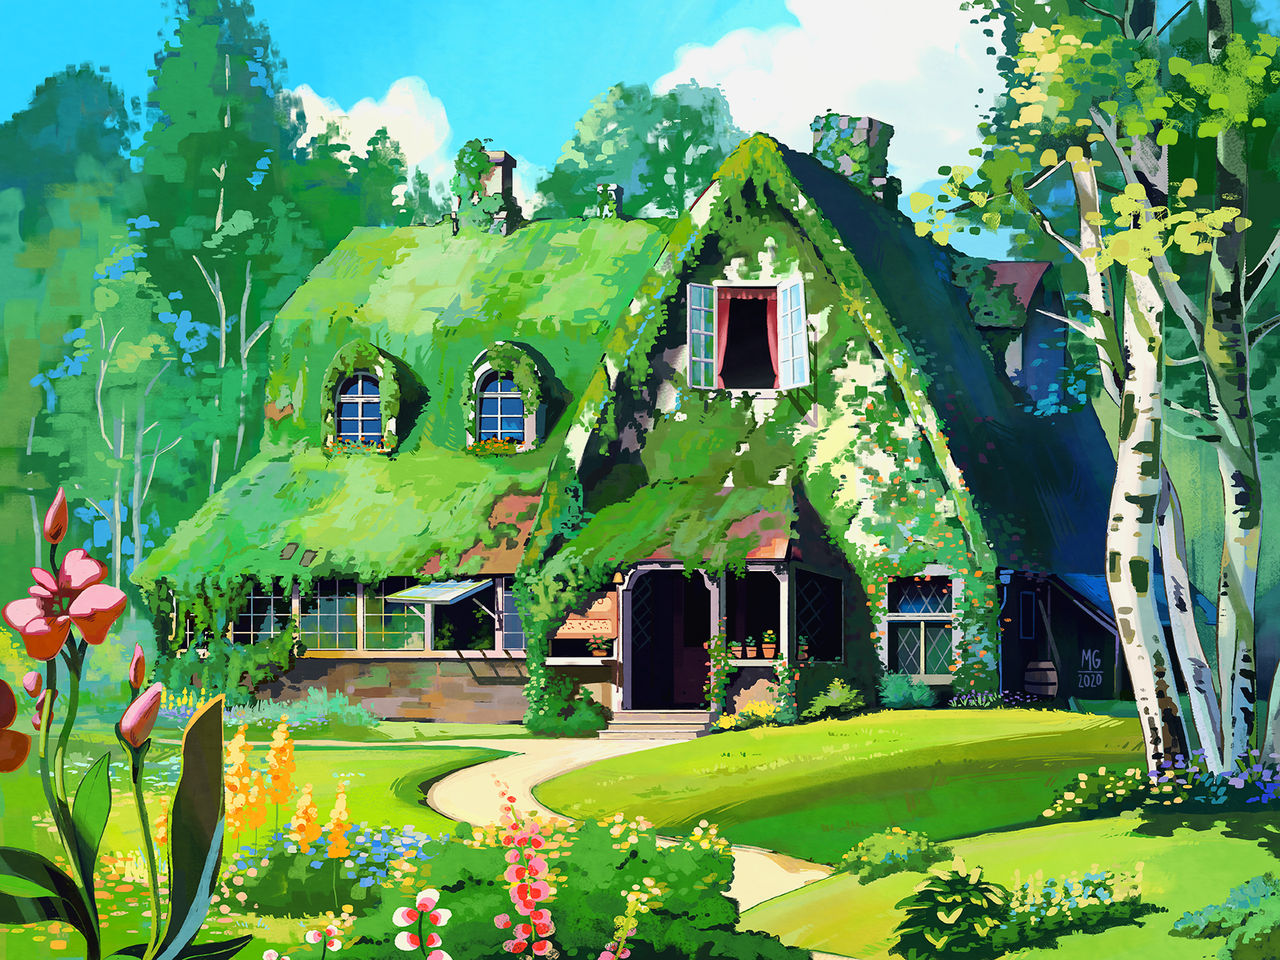 Studio Ghibli Scene, Kiki's Delivery Service